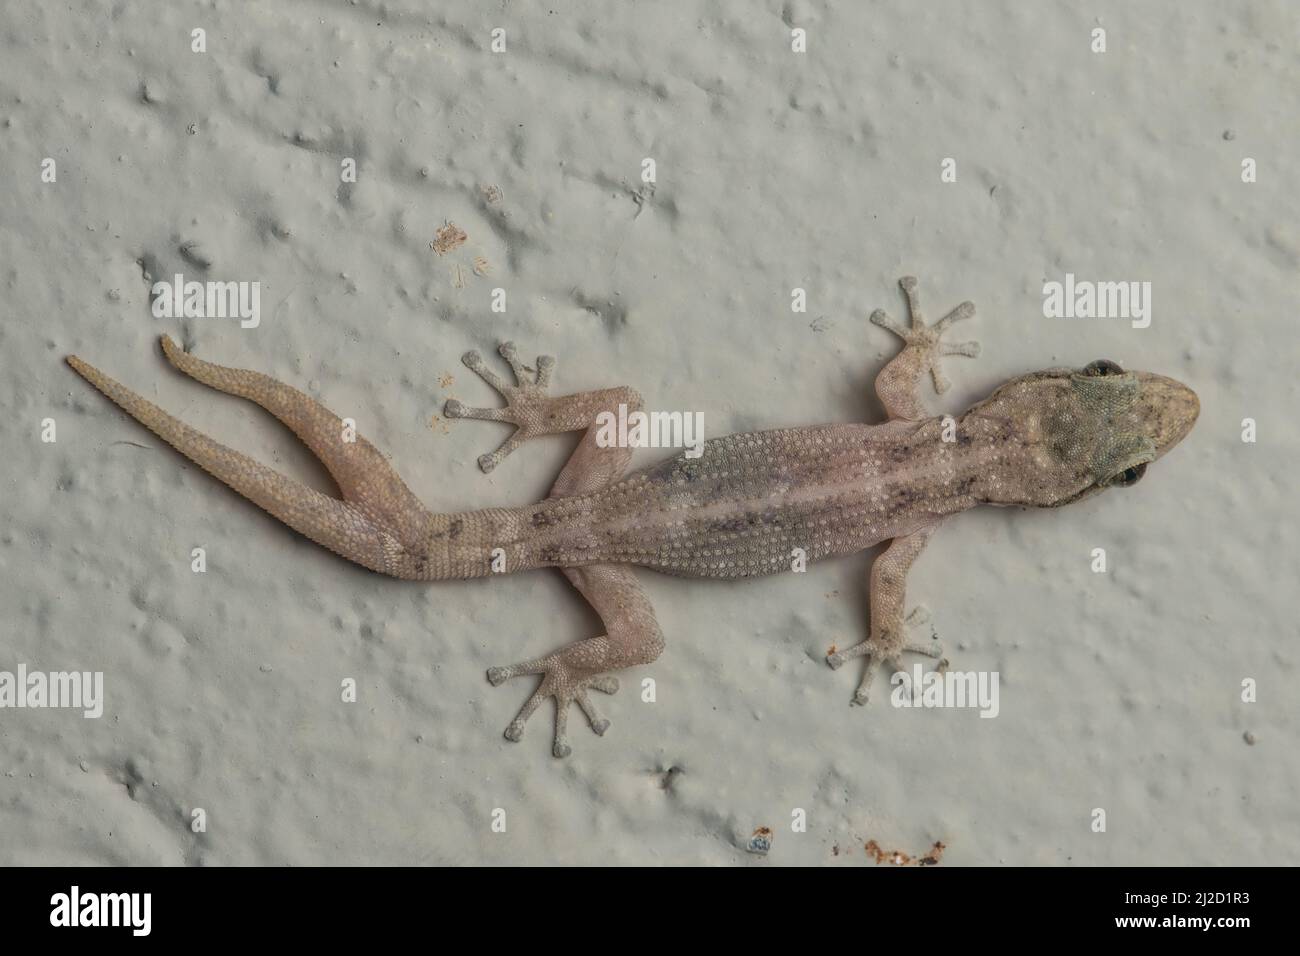 Una foglia costiera gecko toed (Phyllodactylus reissii) in Ecuador con rigenerazione anormale della coda dove la coda si è divisa dando luogo ad una coda a forcella. Foto Stock